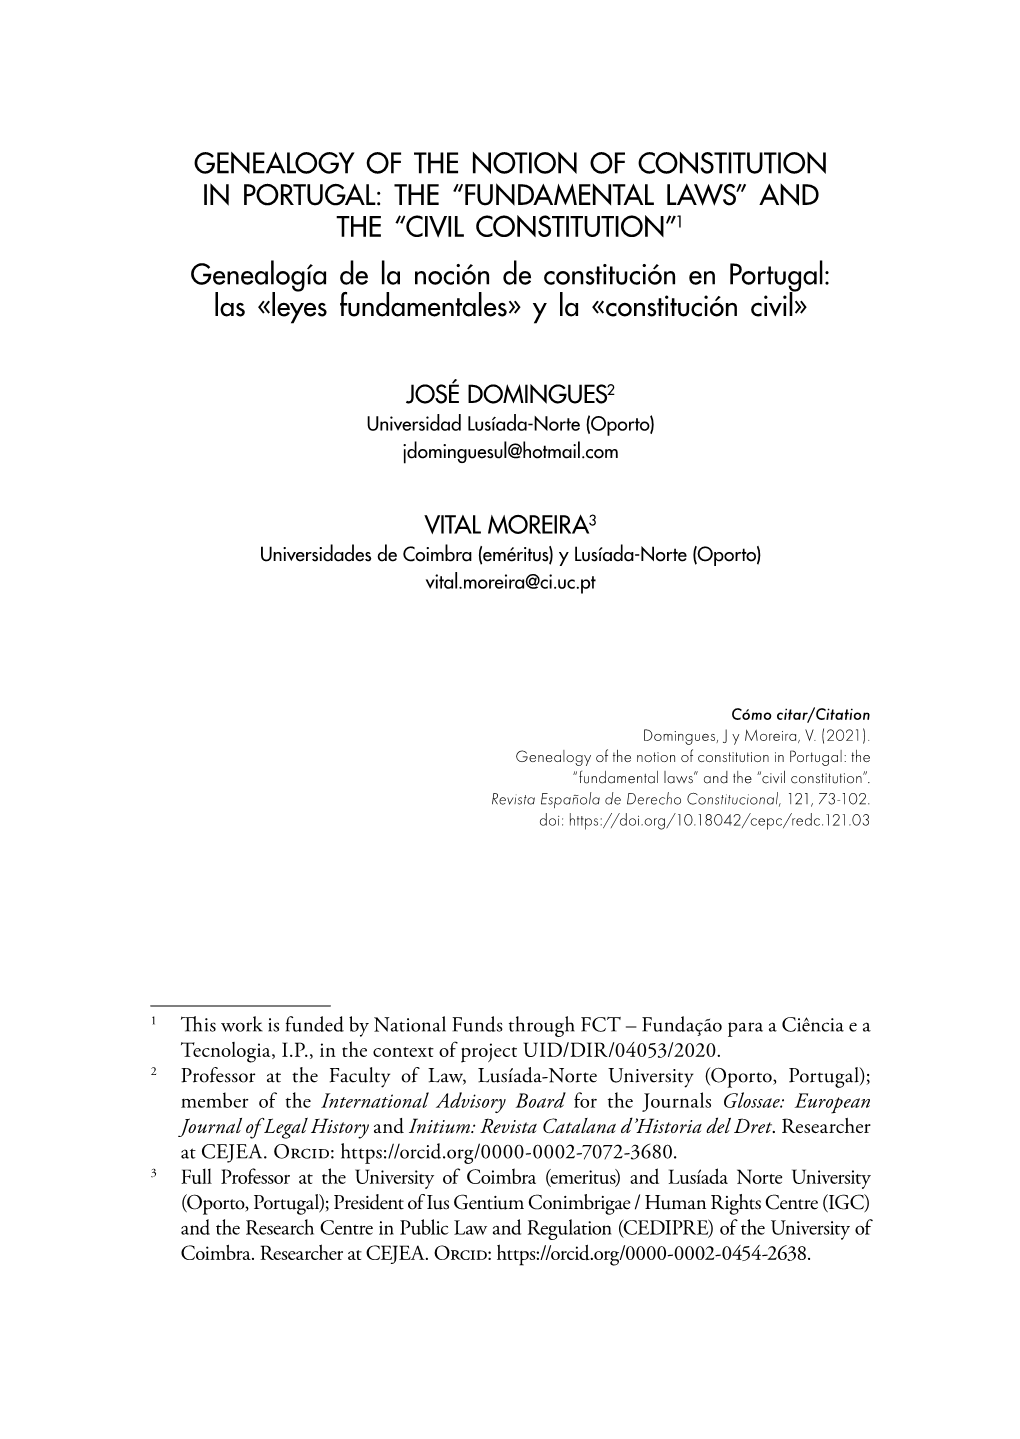 THE “FUNDAMENTAL LAWS” and the “CIVIL CONSTITUTION”1 Genealogía De La Noción De Constitución En Portugal: Las «Leyes Fundamentales» Y La «Constitución Civil»